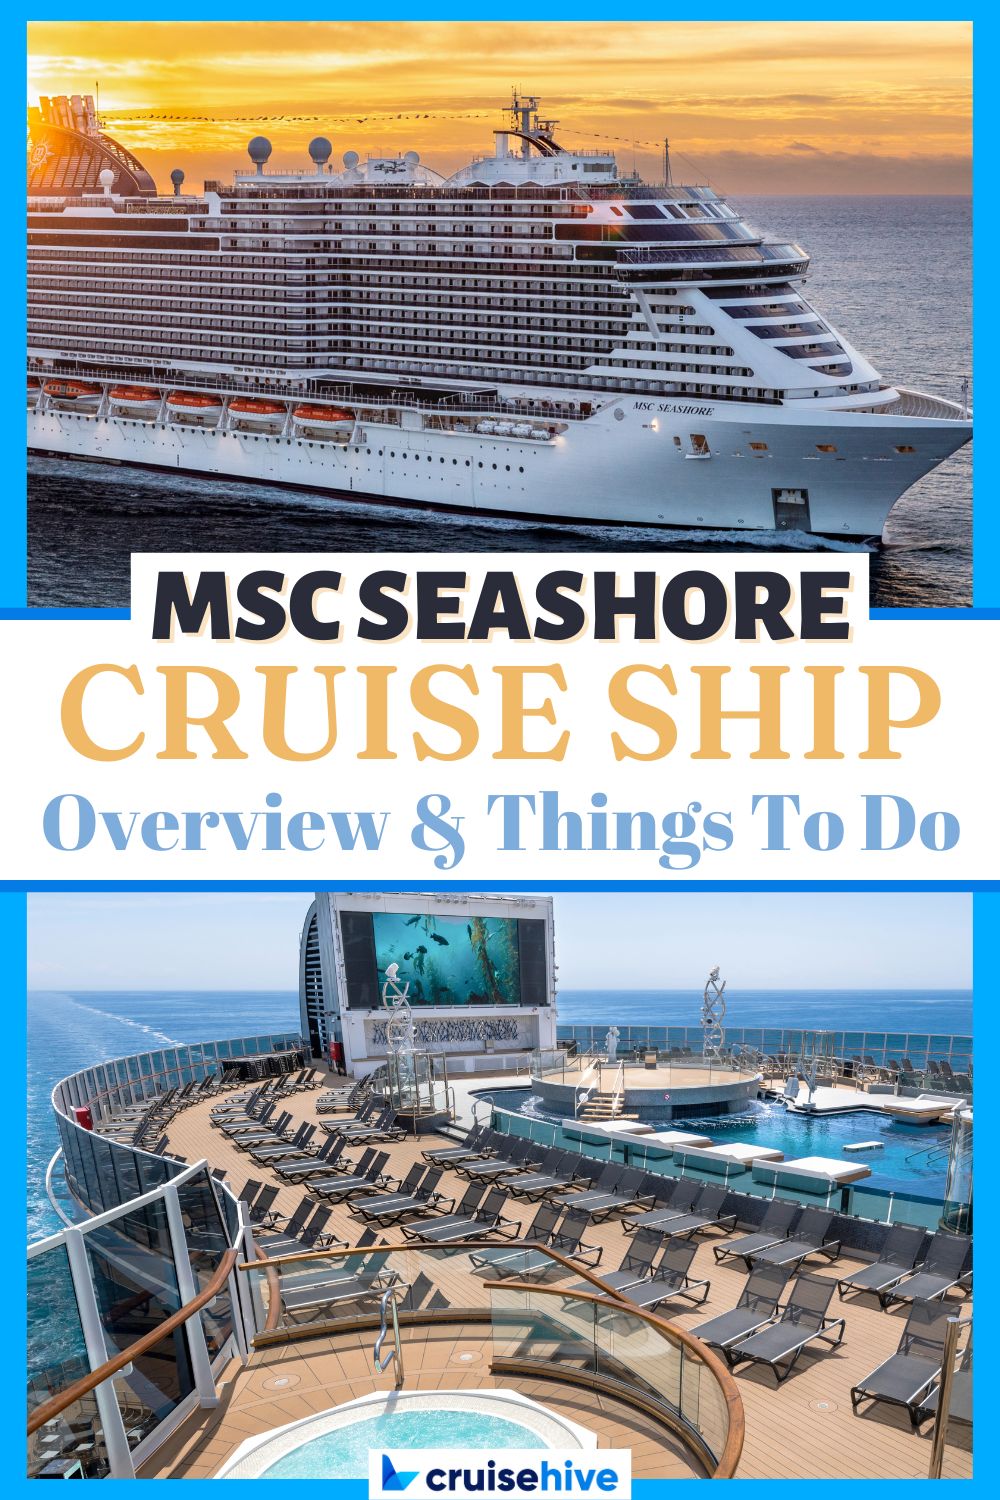 MSC Seashore Cruise Ship